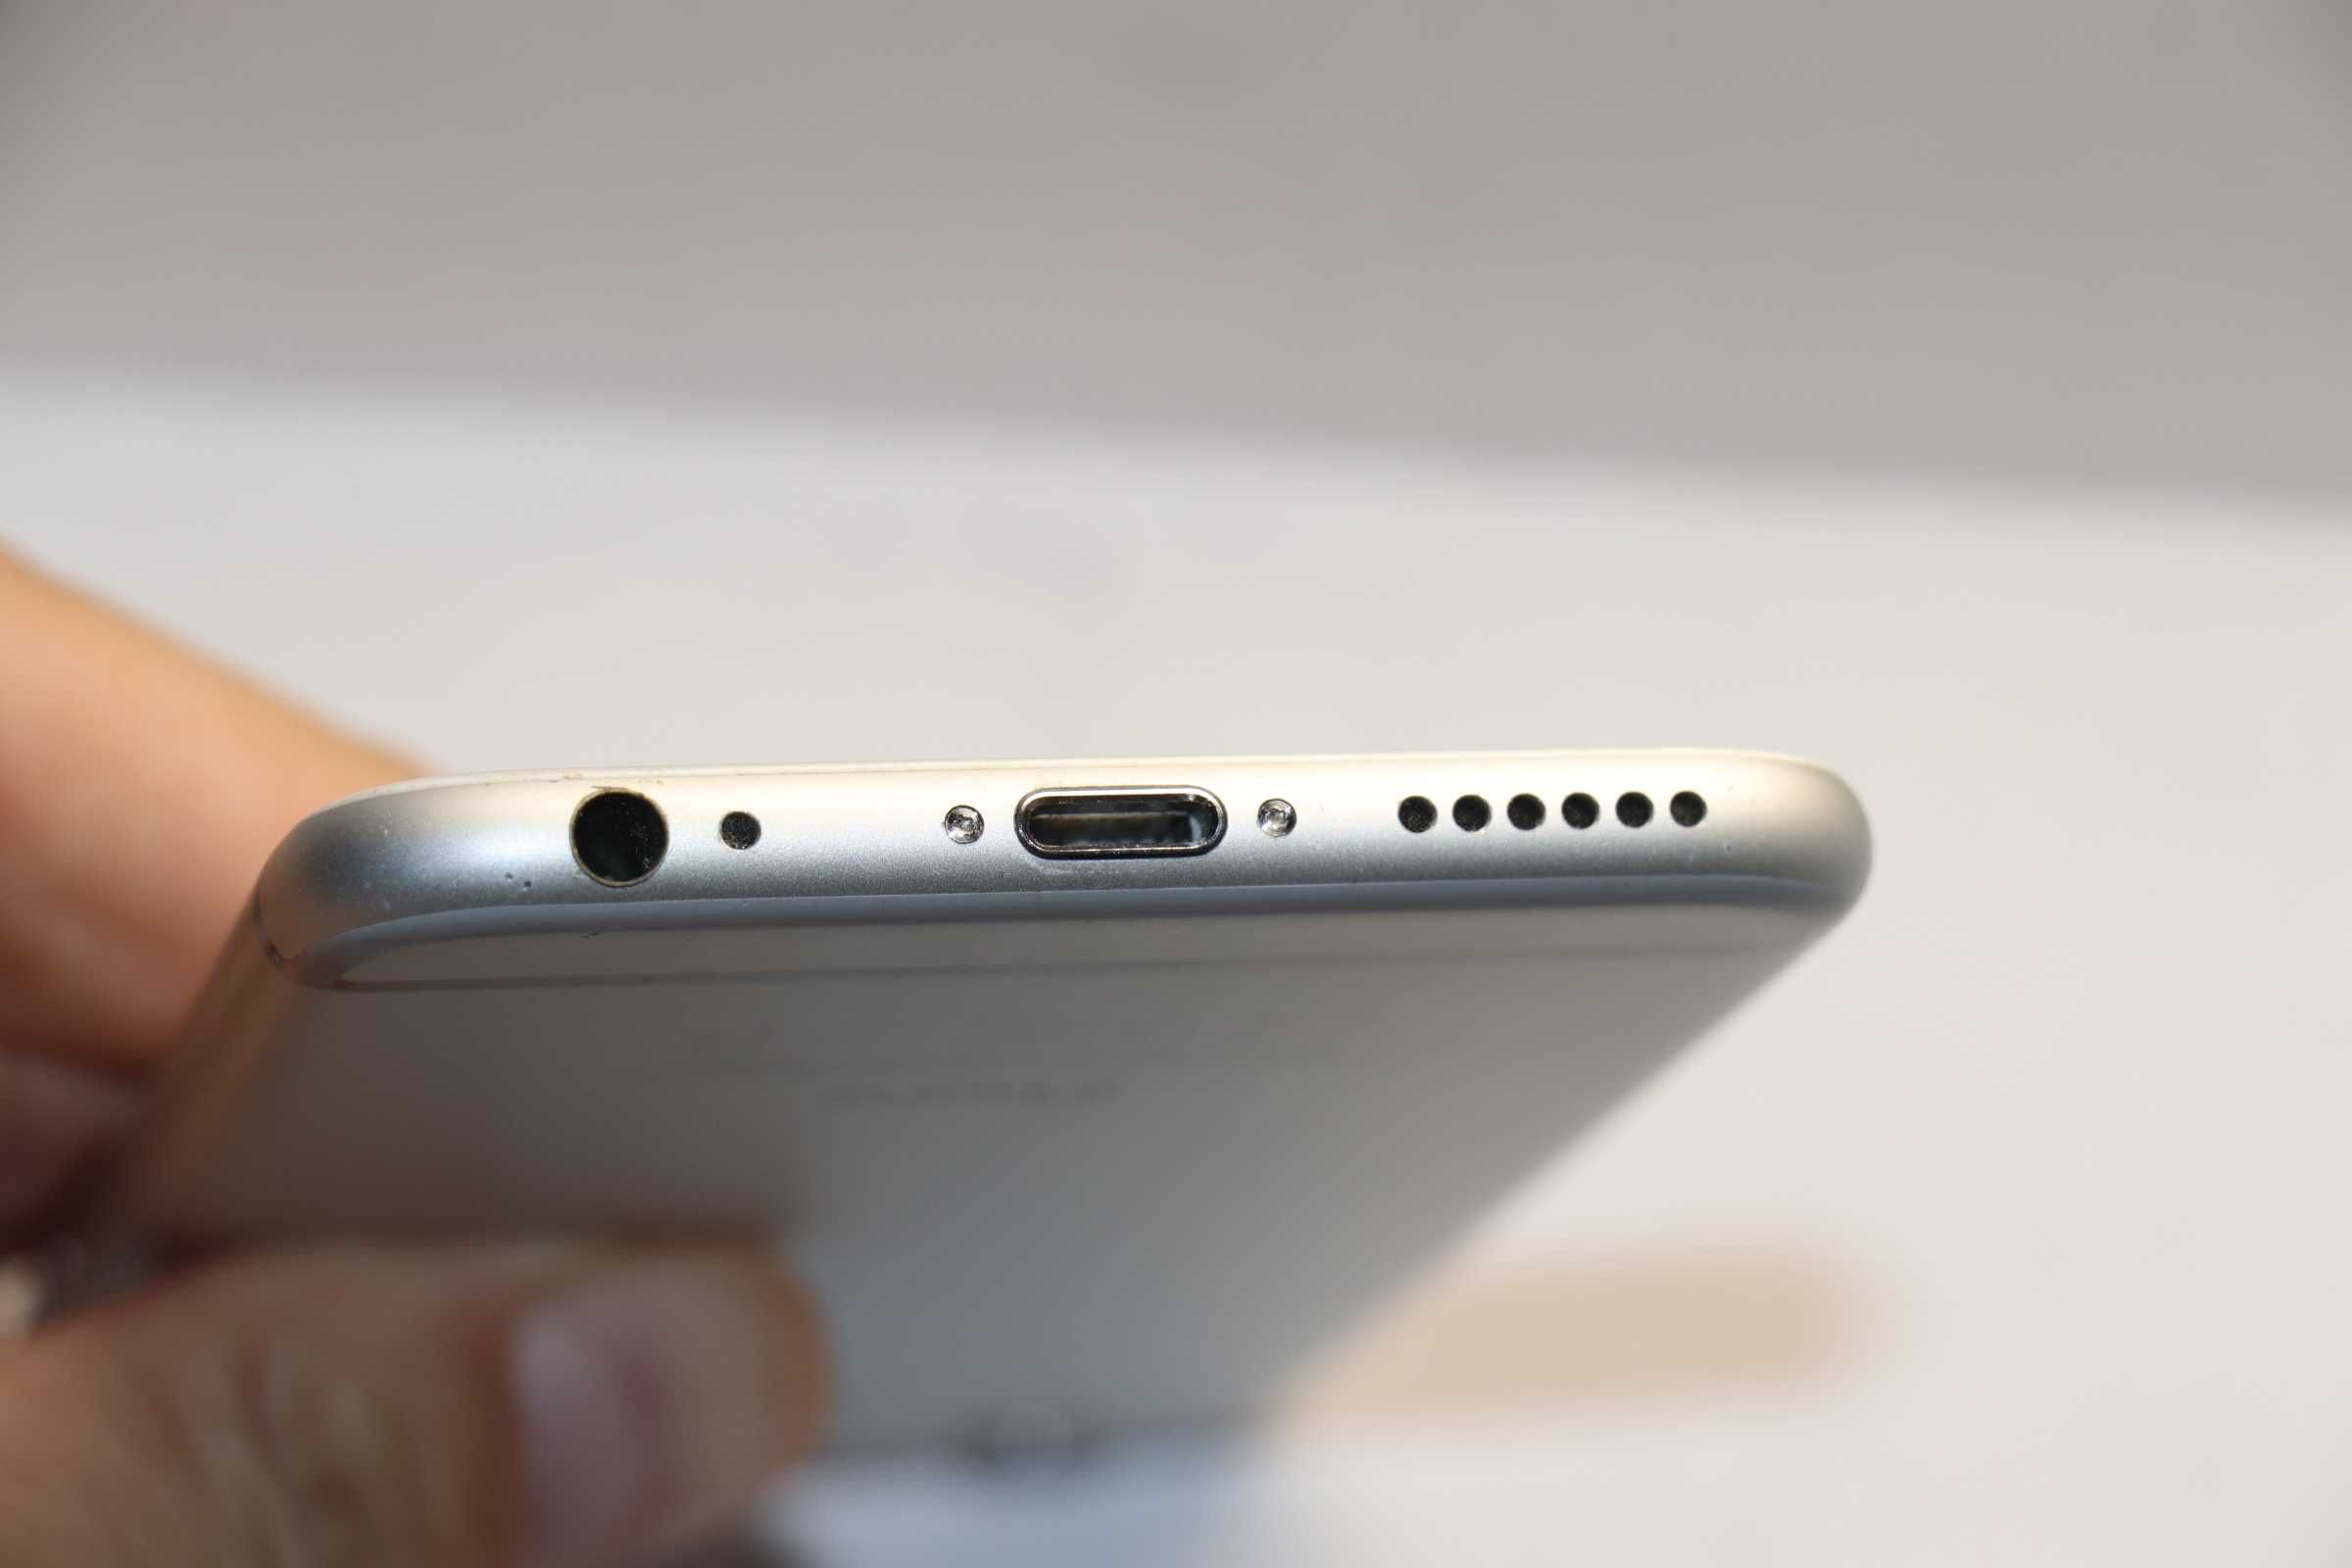 Apple iPhone 6 16GB Silver, идеальное состояние!